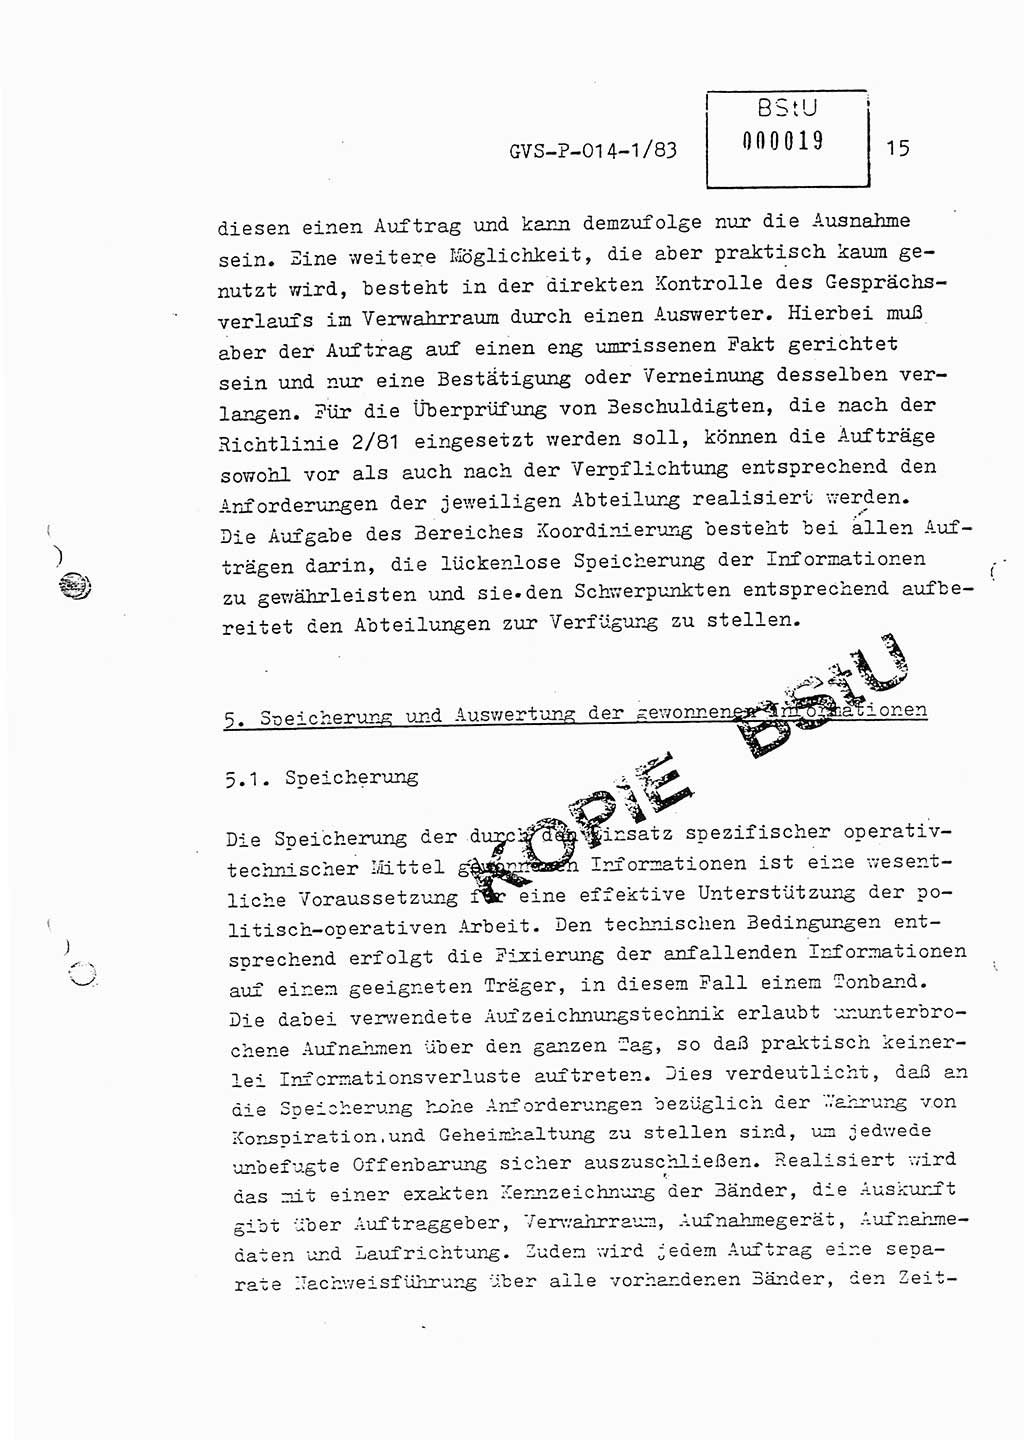 Fachschulabschlußarbeit Leutnant Dirk Autentrieb (HA Ⅸ/AKG), Ministerium für Staatssicherheit (MfS) [Deutsche Demokratische Republik (DDR)], Hauptabteilung (HA) Ⅸ, Geheime Verschlußsache (GVS) P-014-1/83, Berlin 1983, Blatt 15 (FS-Abschl.-Arb. MfS DDR HA Ⅸ GVS P-014-1/83 1983, Bl. 15)